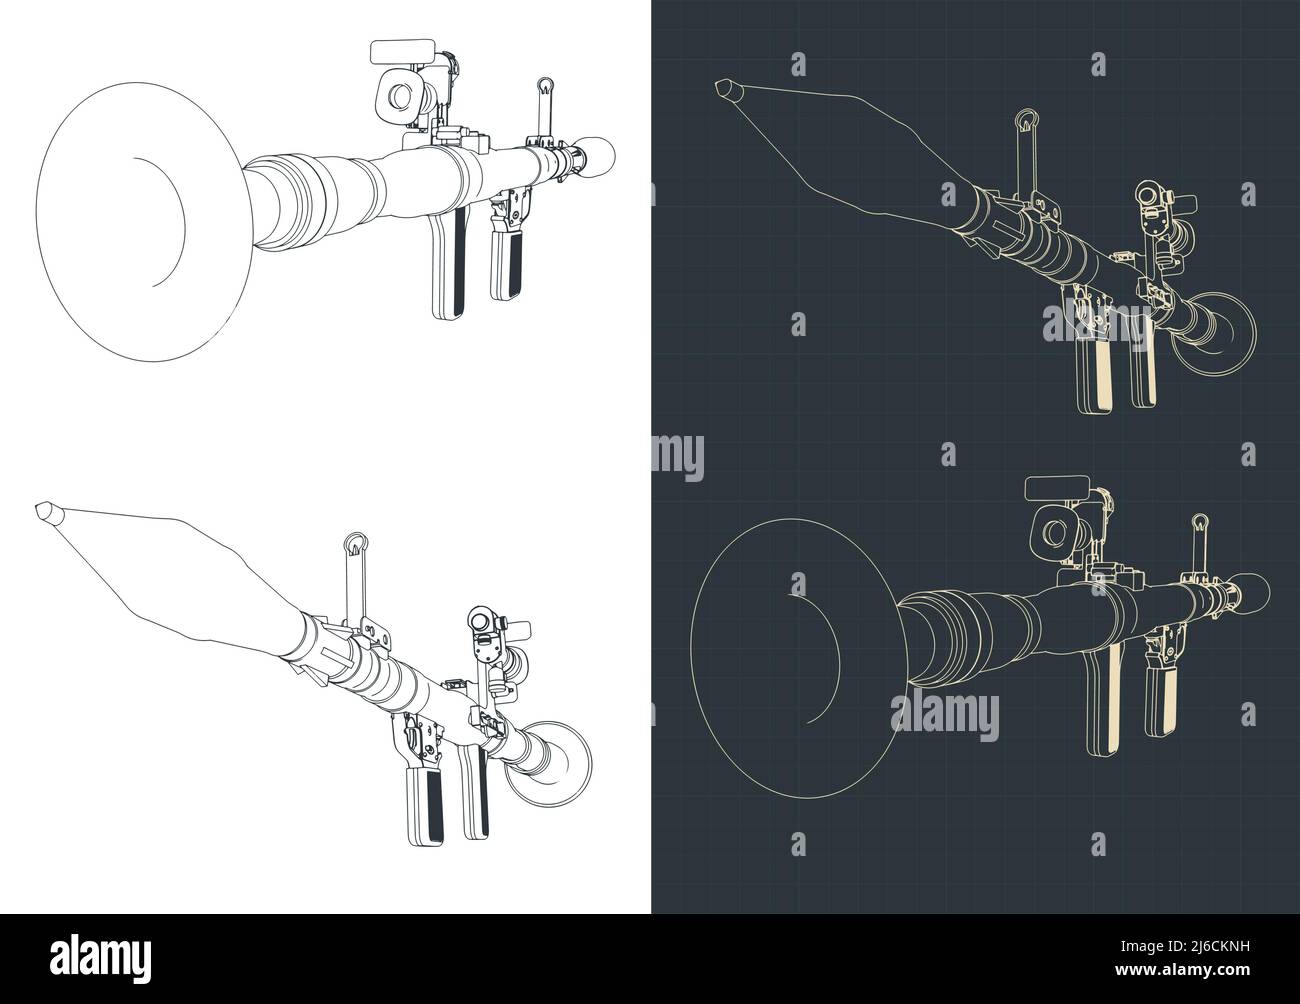 Illustrazione vettoriale stilizzata dei disegni del lanciagranate anticarro portatile Illustrazione Vettoriale